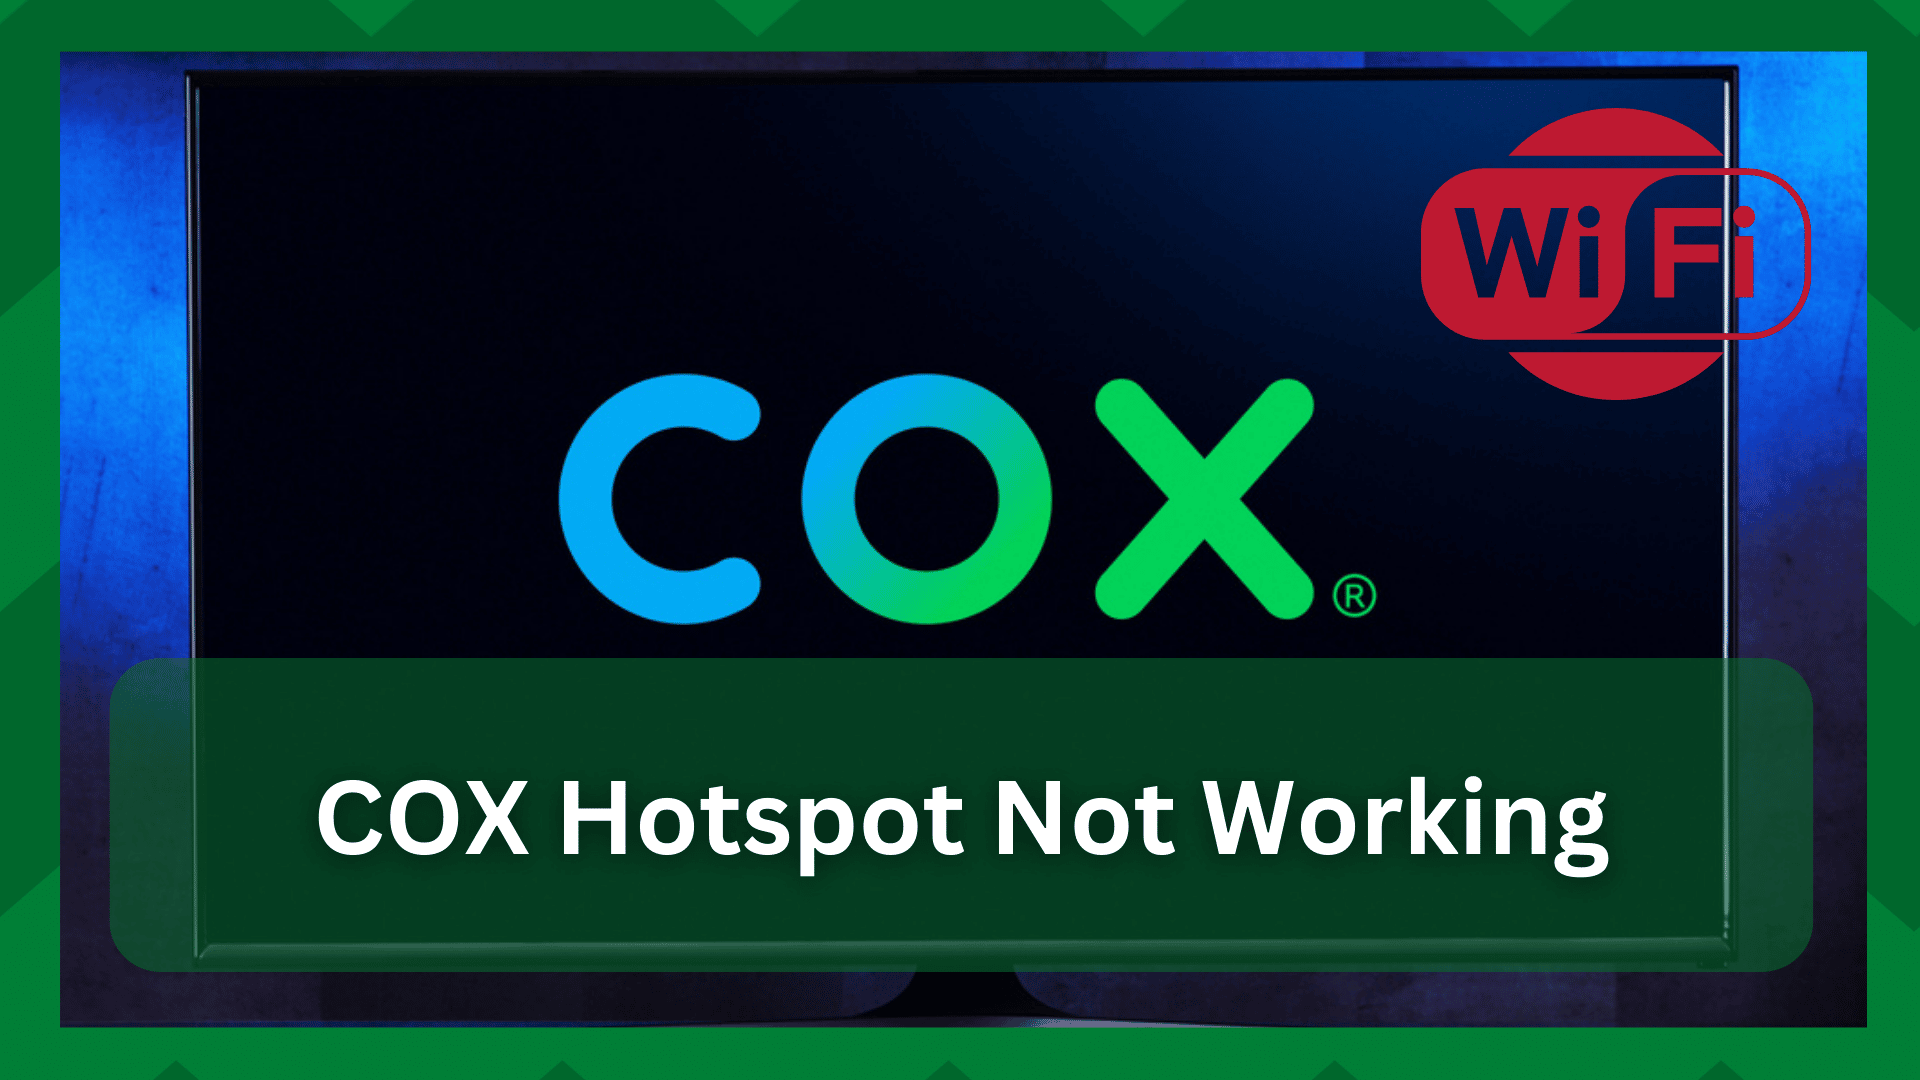 6 βήματα για τη διόρθωση του Cox Hotspot που δεν λειτουργεί